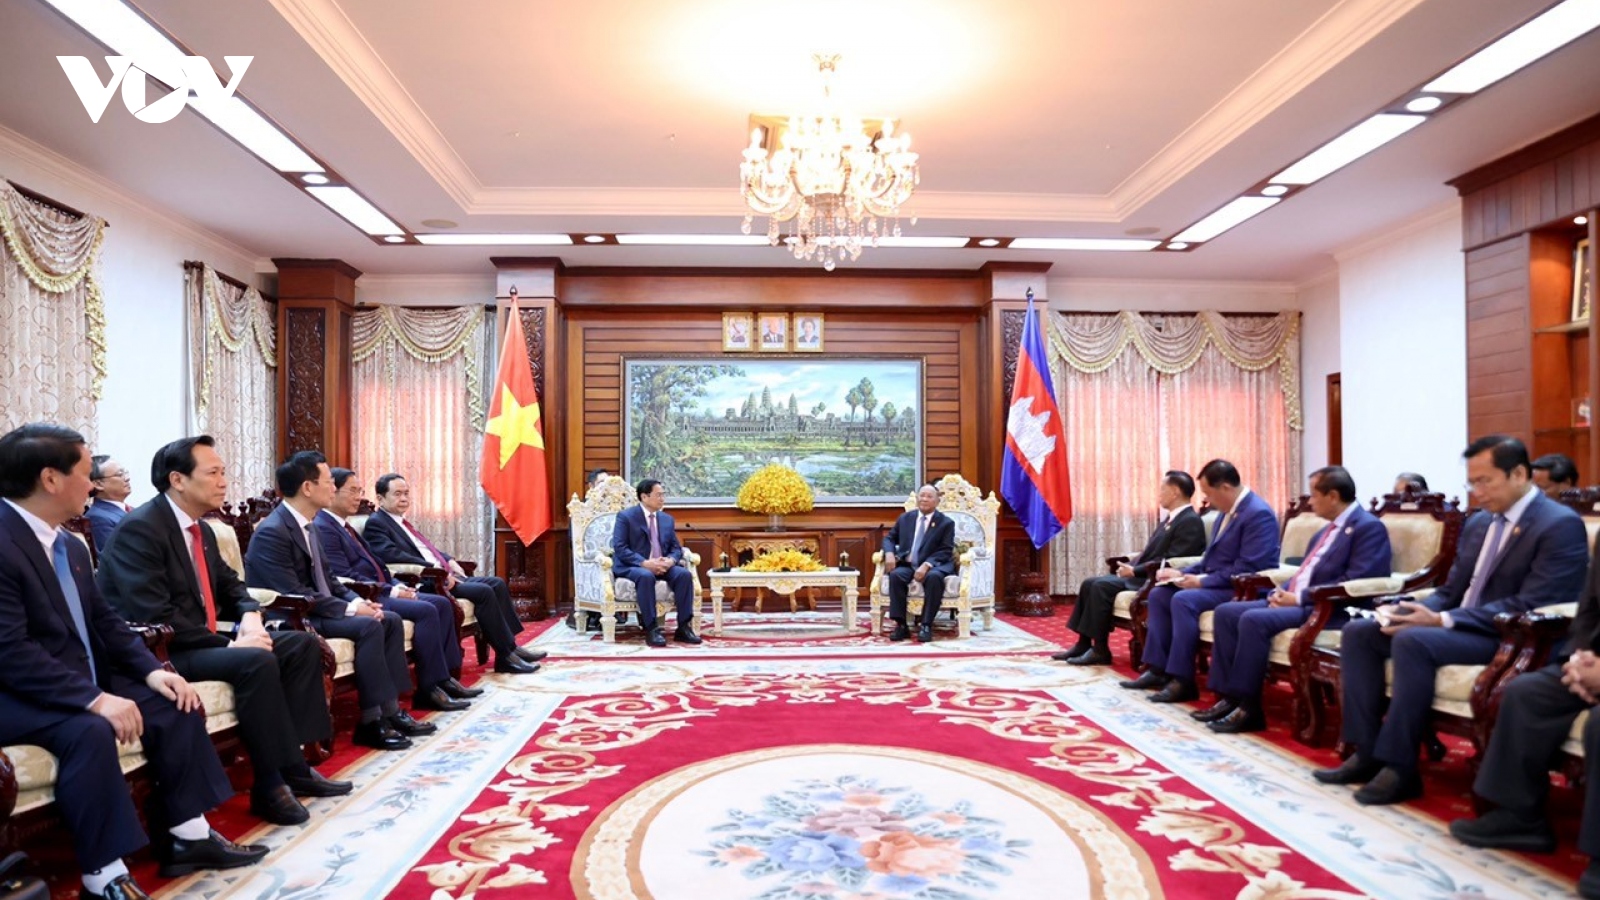 Thủ tướng Chính phủ Phạm Minh Chính hội kiến Chủ tịch Quốc hội Campuchia